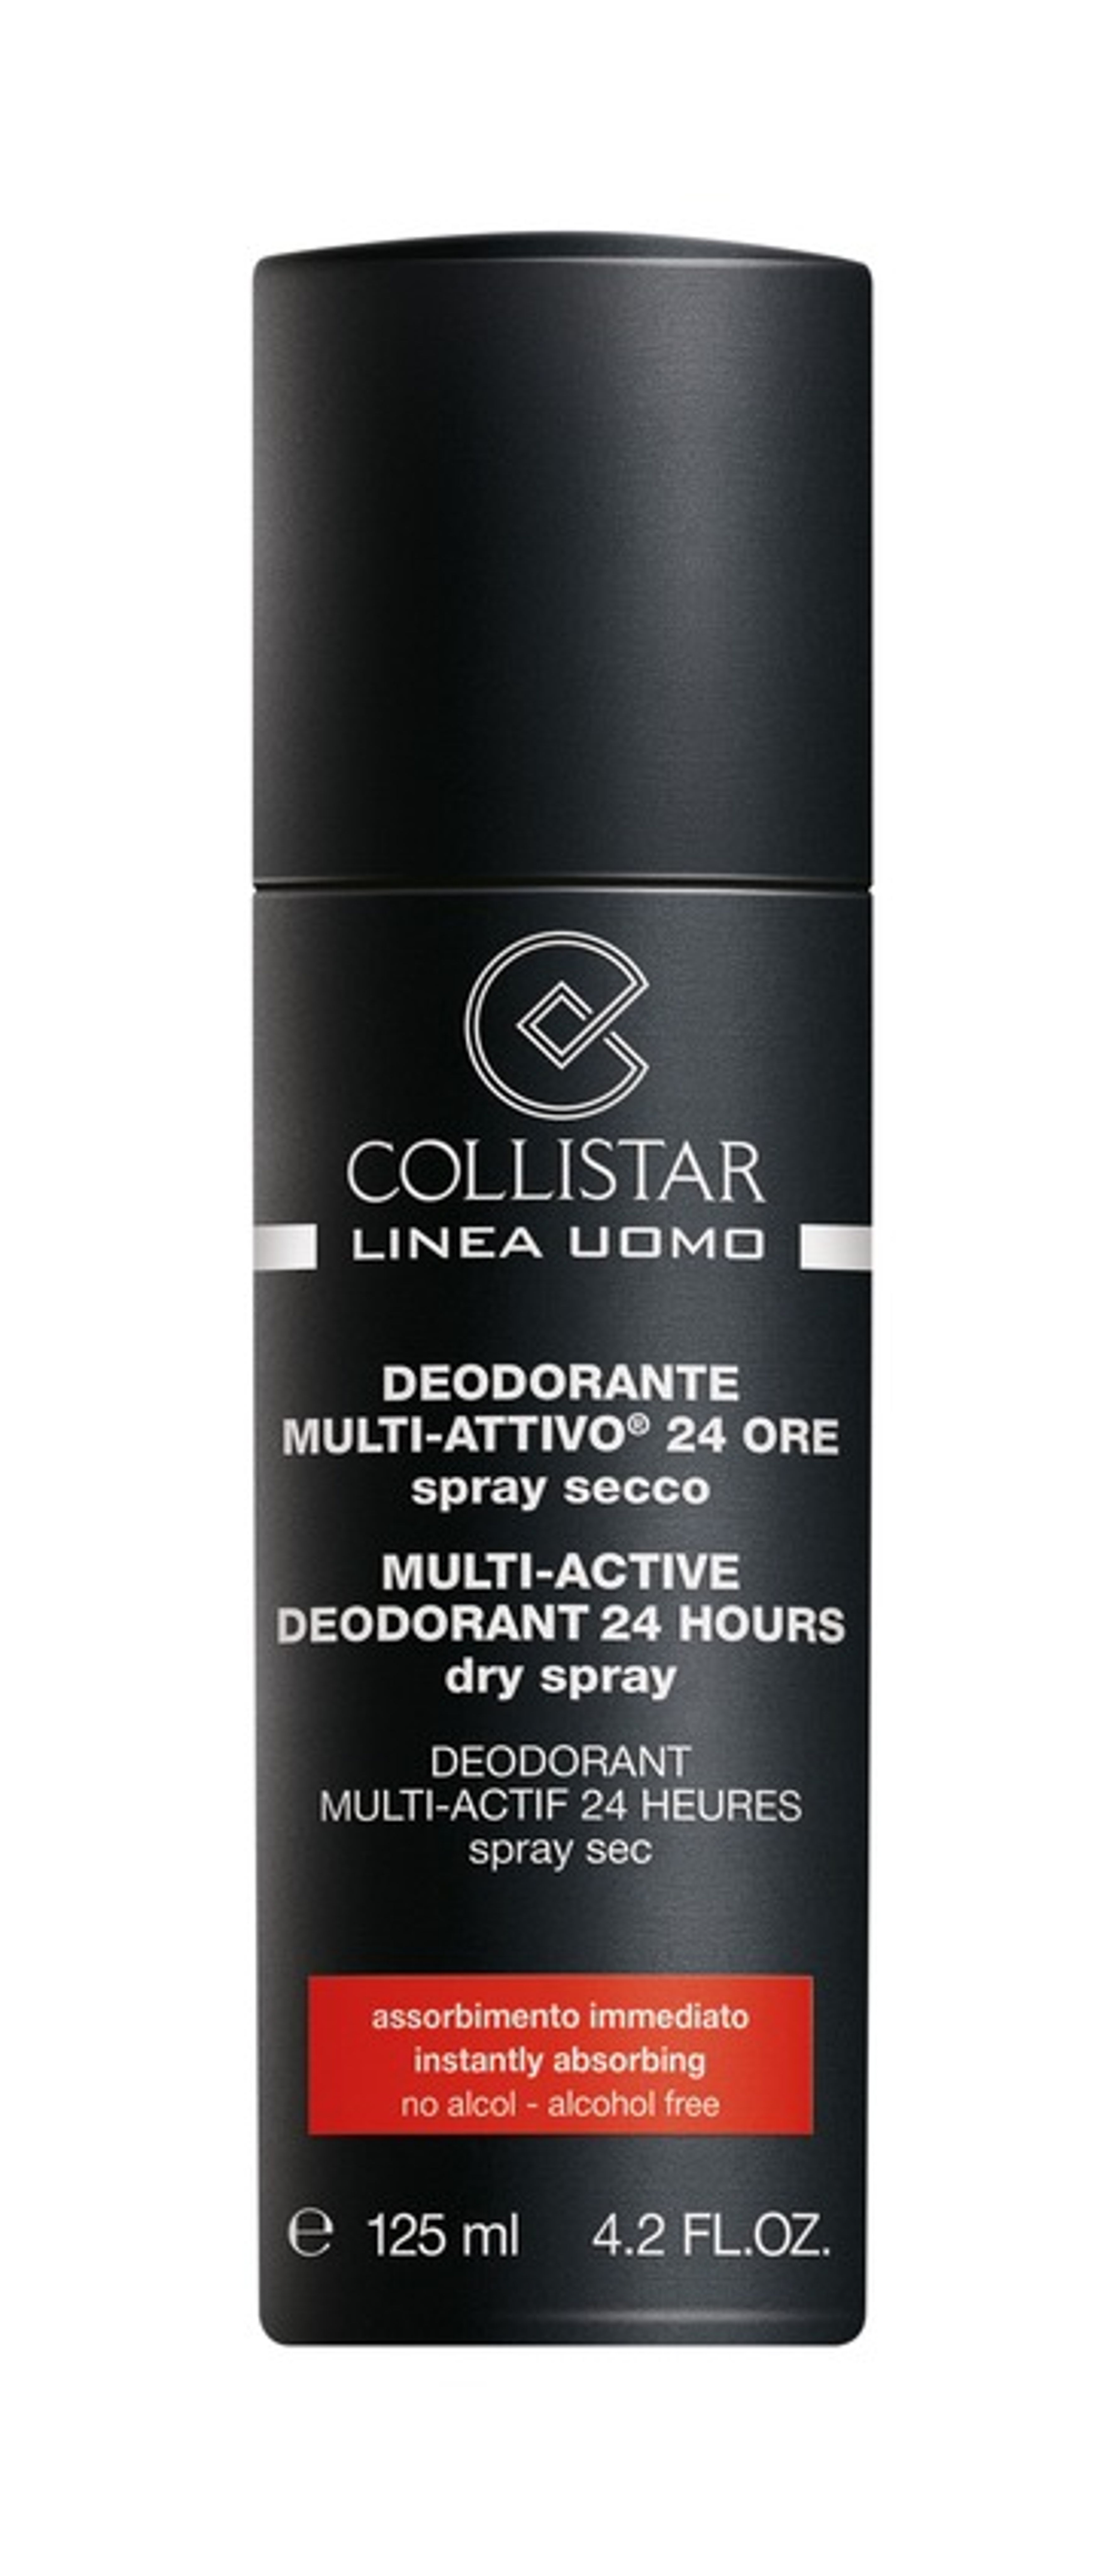 Collistar Deodorante Uomo Multi-attivo 24 Ore 1